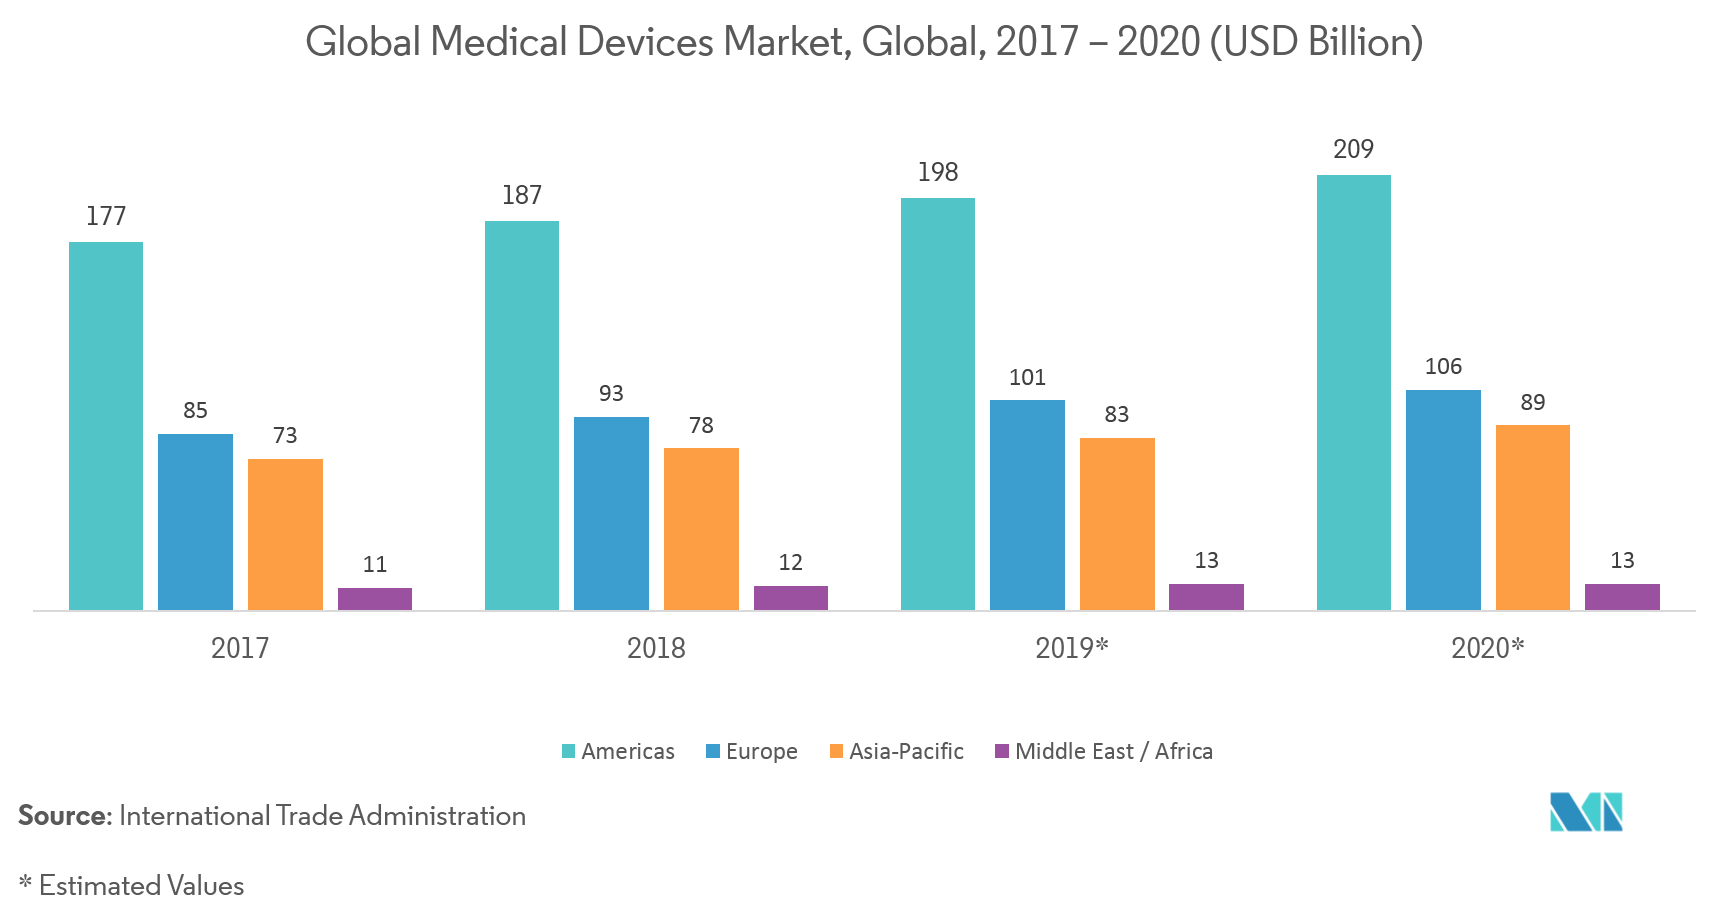 Mercado de equipos de deposición física de vapor (PVD) mercado global de dispositivos médicos, global, 2017-2020 (miles de millones de dólares)